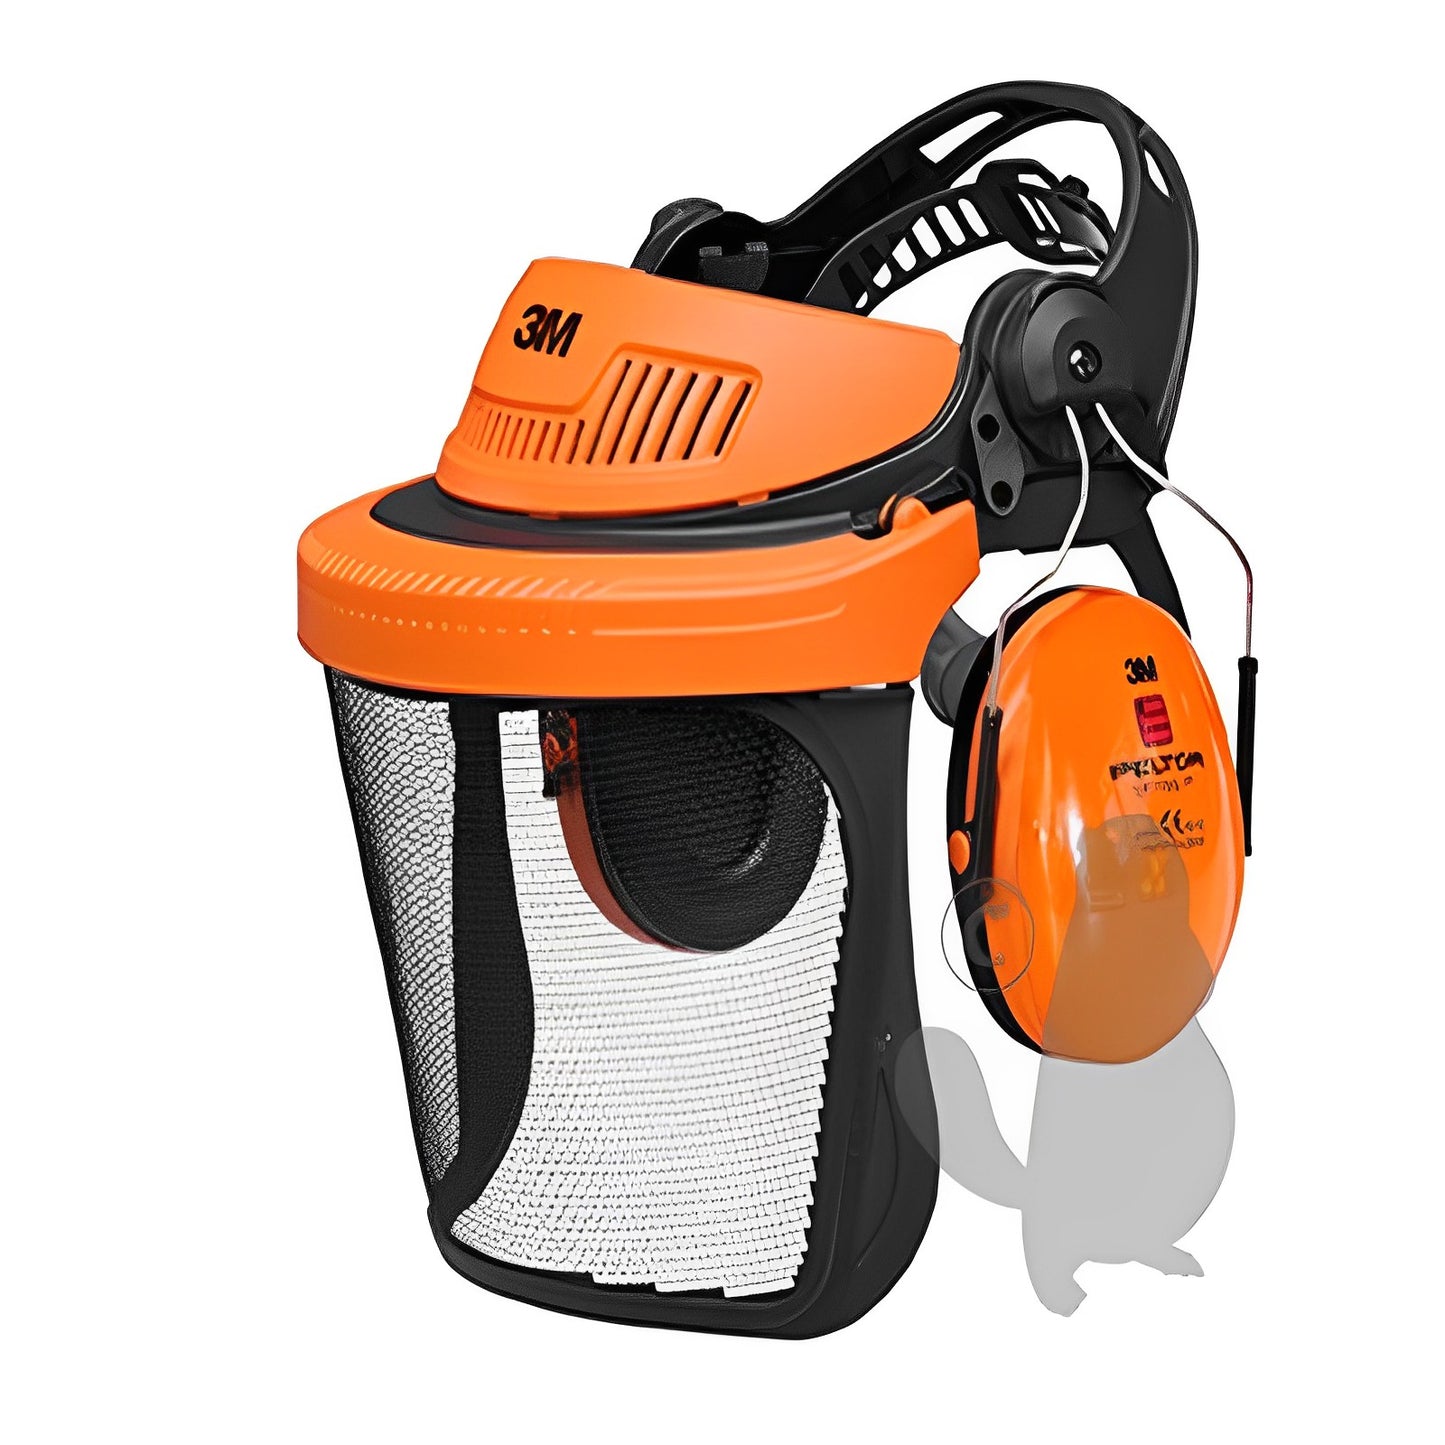 Combinaison multisystème 3M™ Peltor™ avec coiffe G500 orange, visière de protection grillagée relevable en acier inoxydable 1,8 x 2,5mm, anti-bruit H510A (26dB)